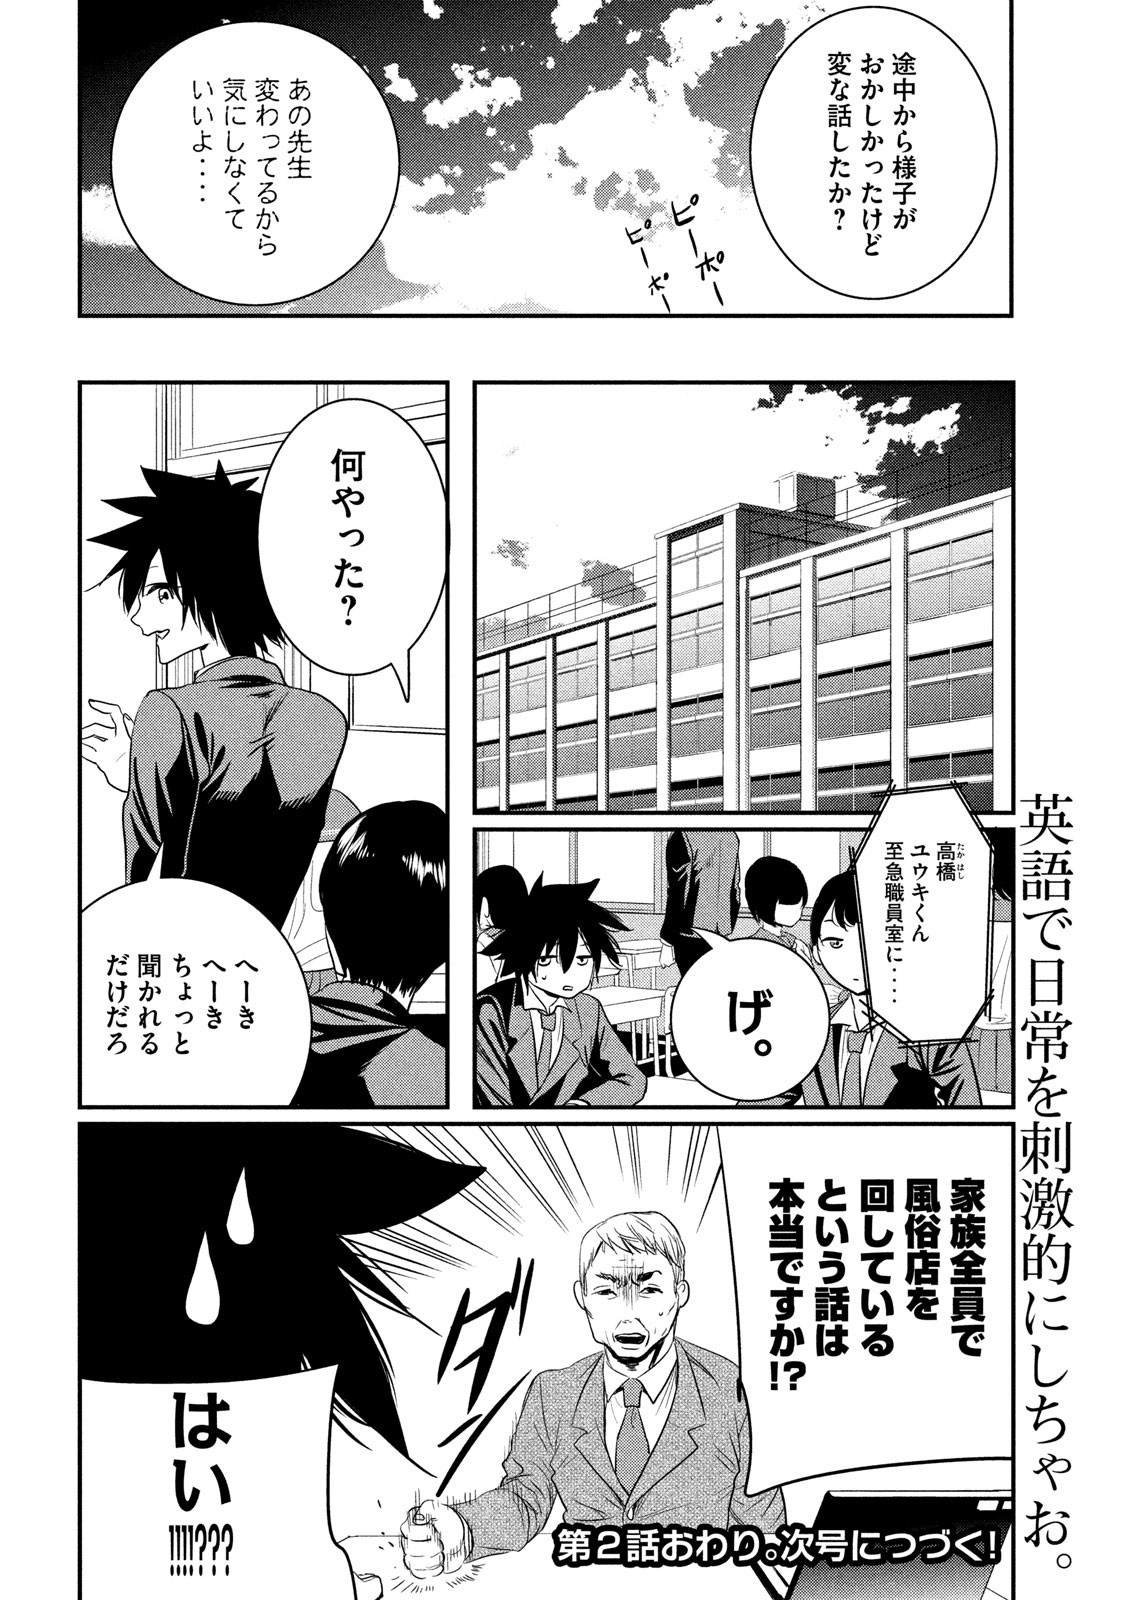 Eigo ×× Sensei - Chapter 1 - Page 23